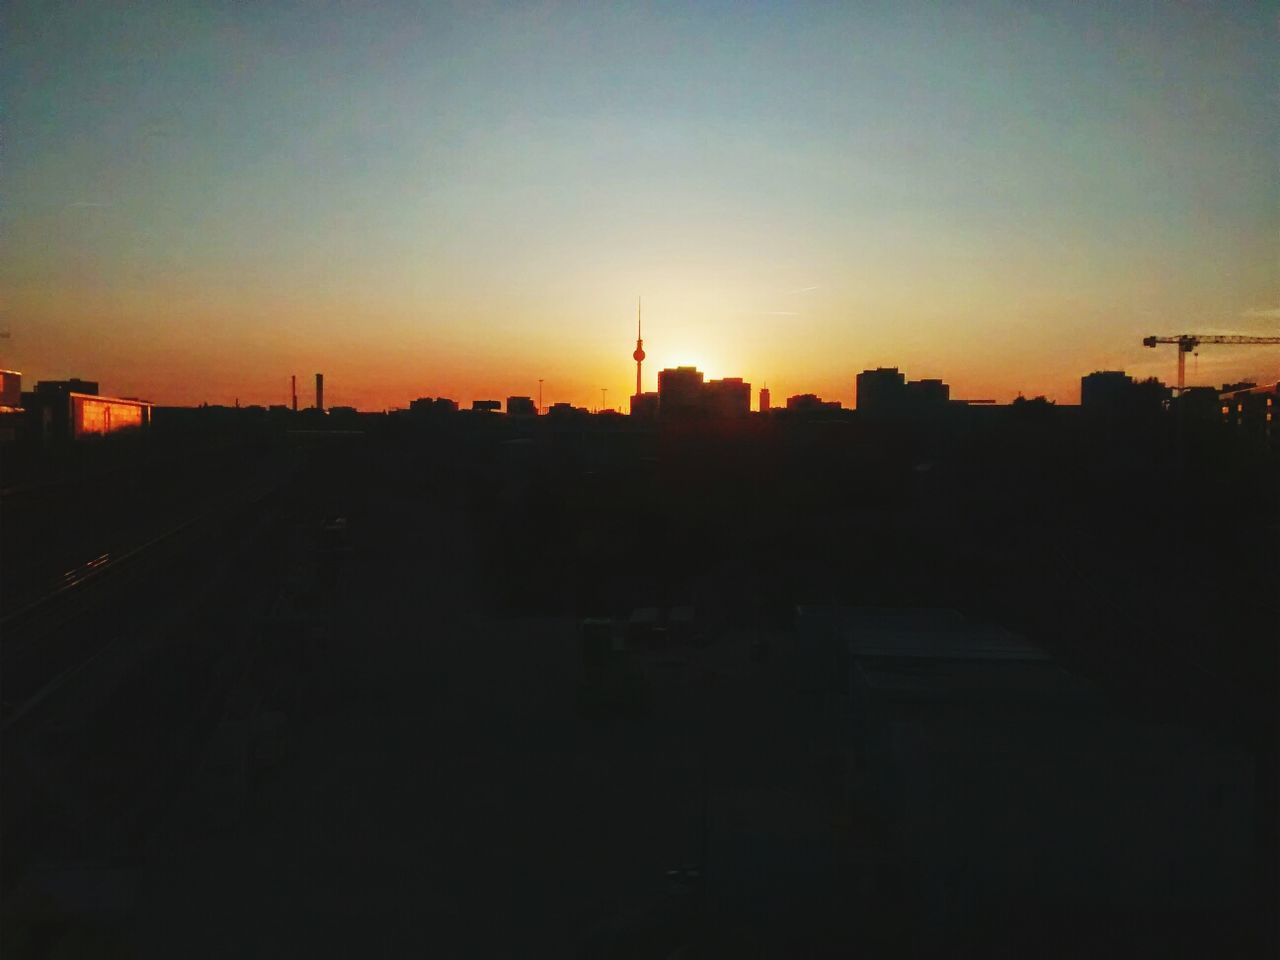 Cityscape silhouette at sundown